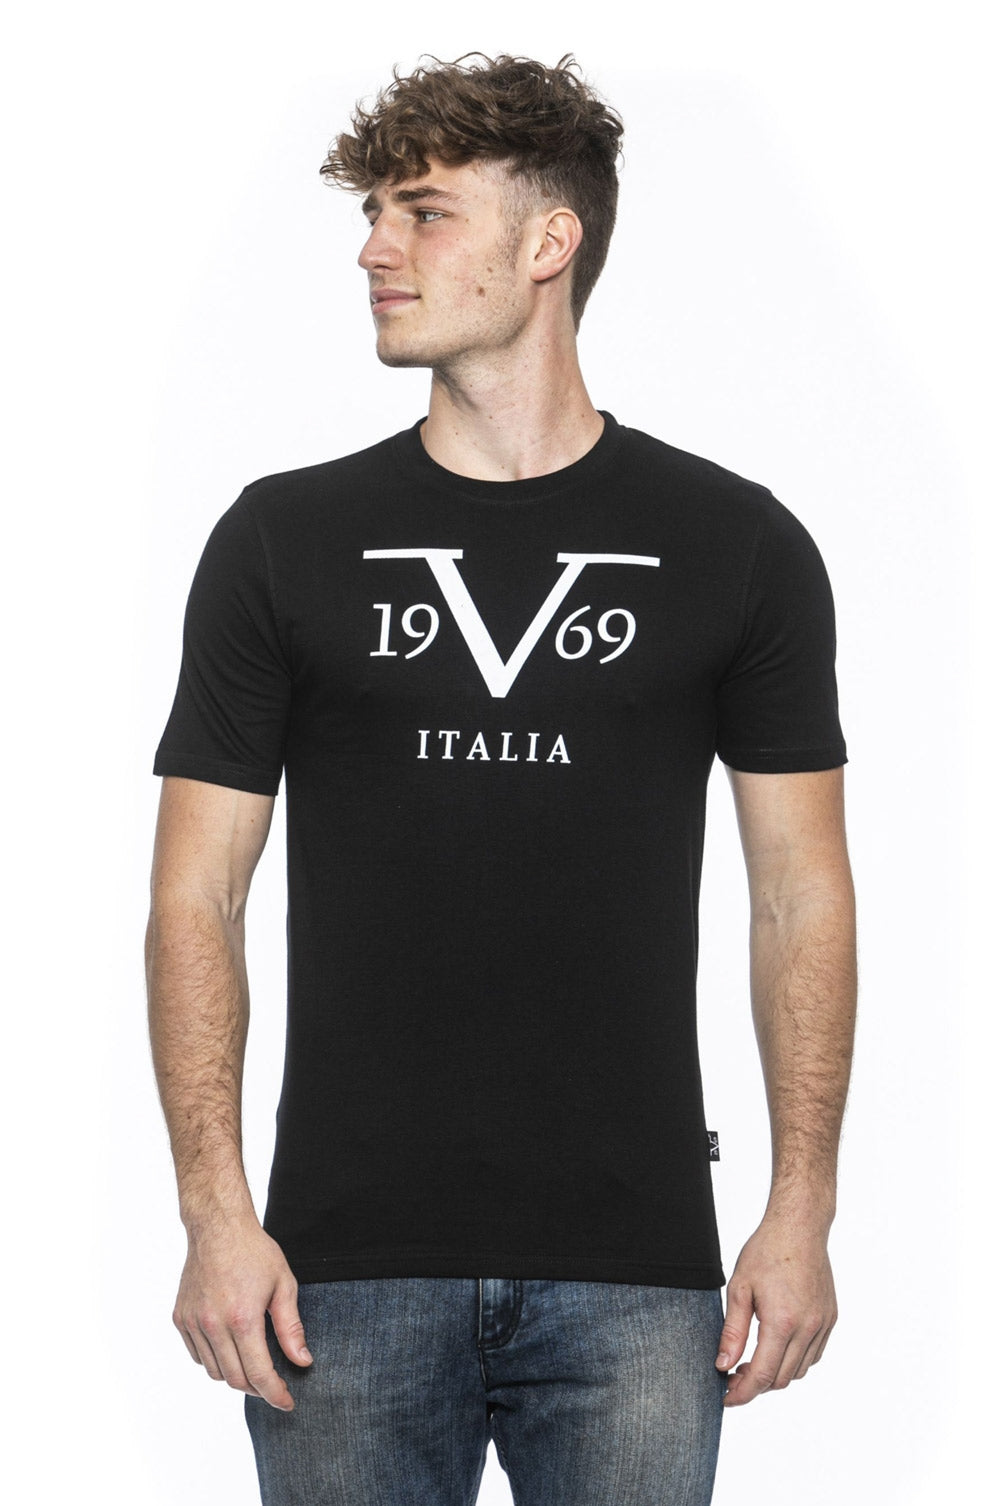 19V69 Italia Mens T-Shirt Black RAYAN BLACK – 19v69 Italia